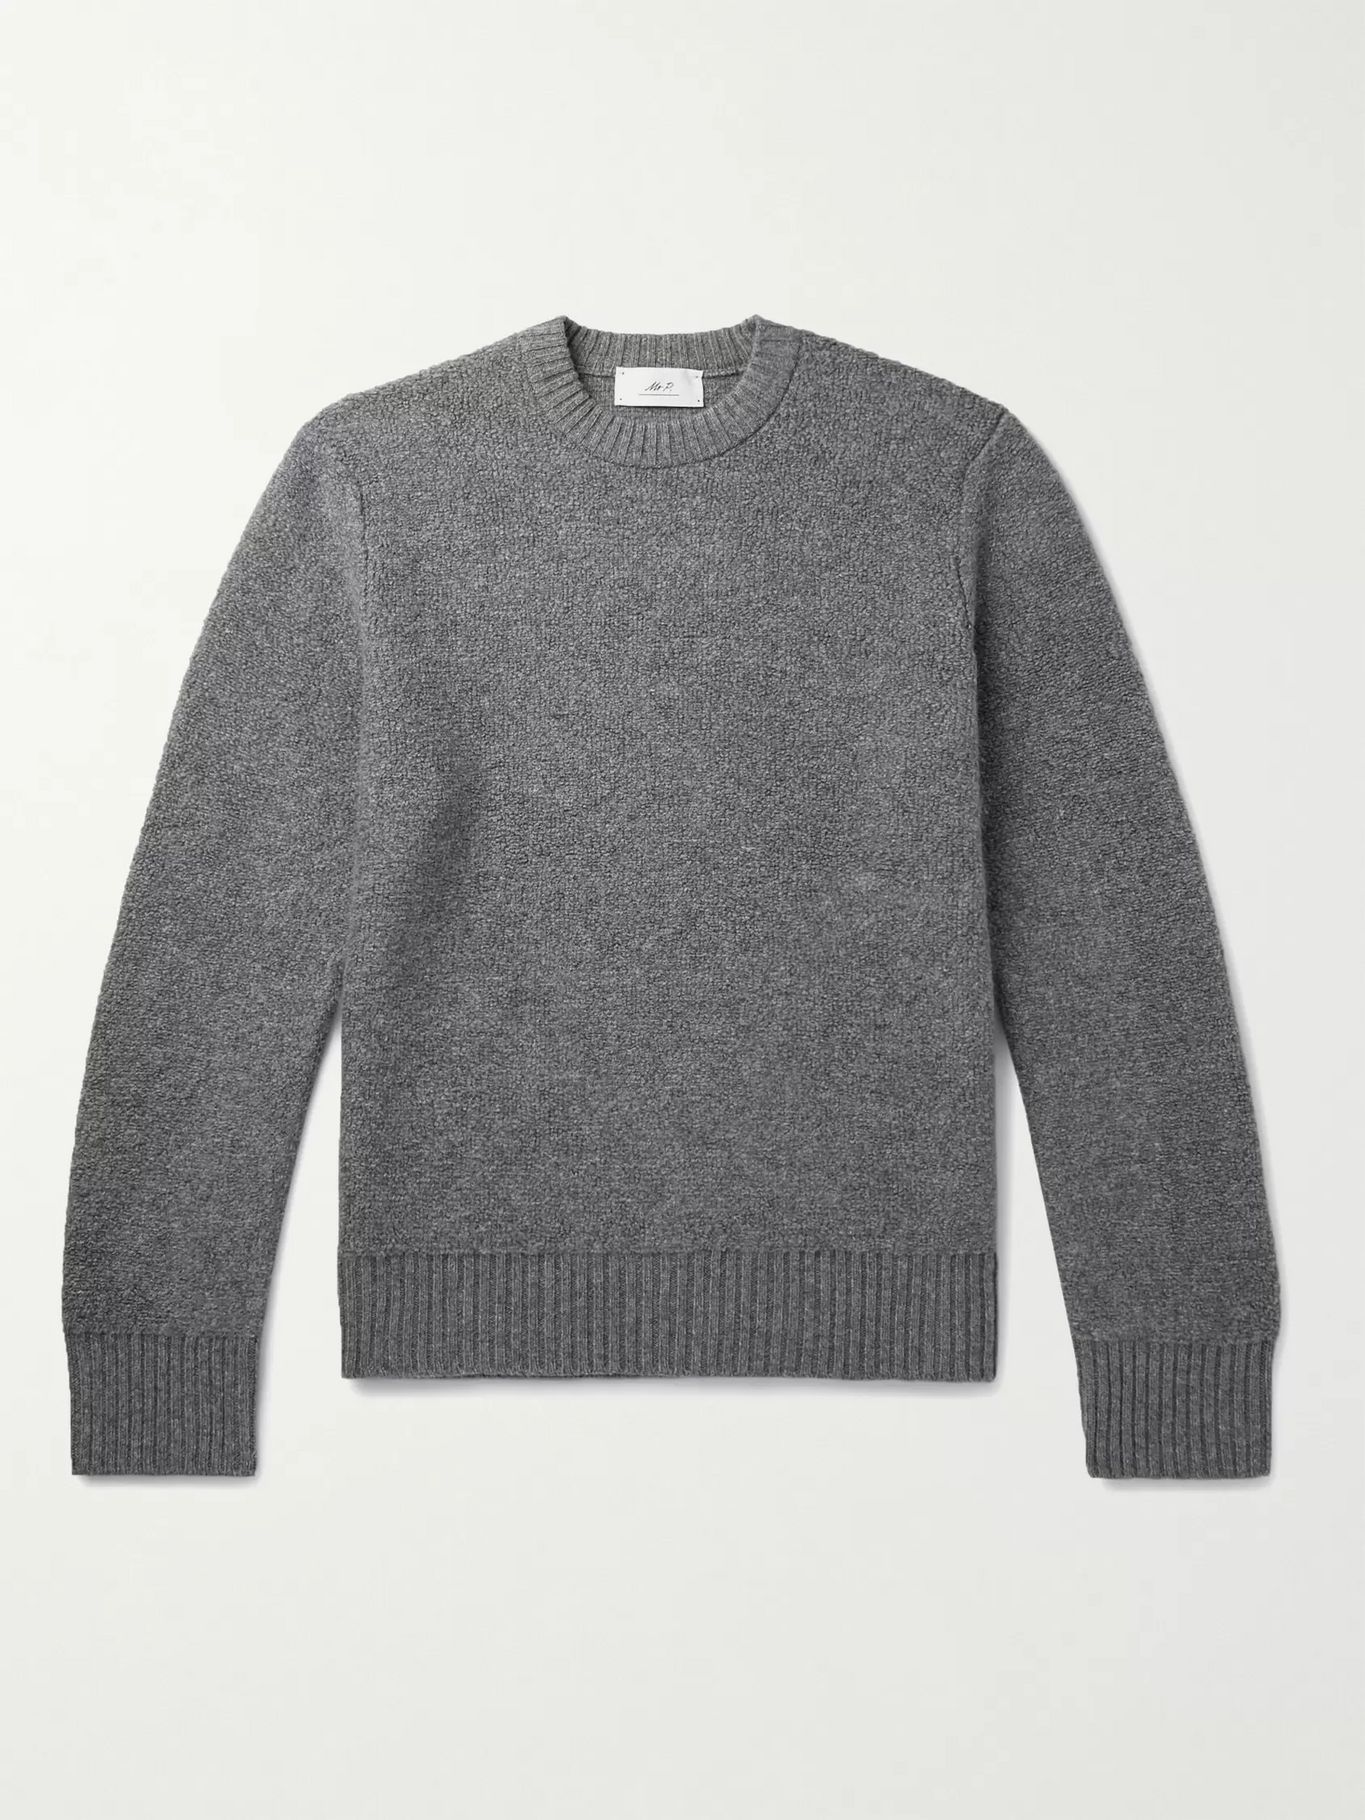 Gray Cashmere Sweater | MR P. | MR PORTER | Mr Porter (UK)